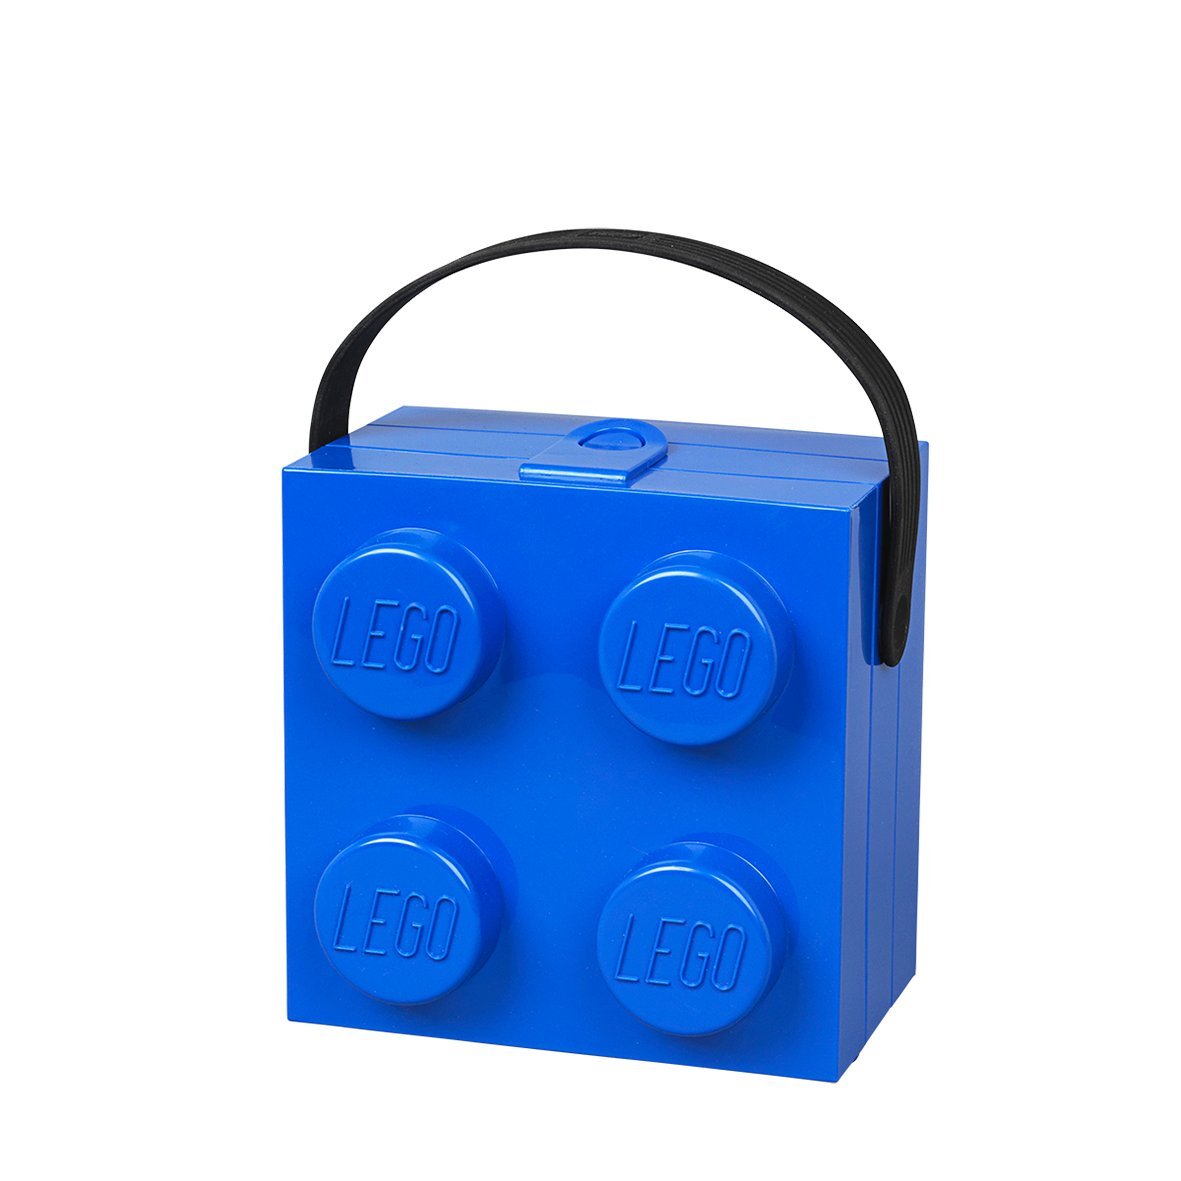 Lunch box LEGO blue